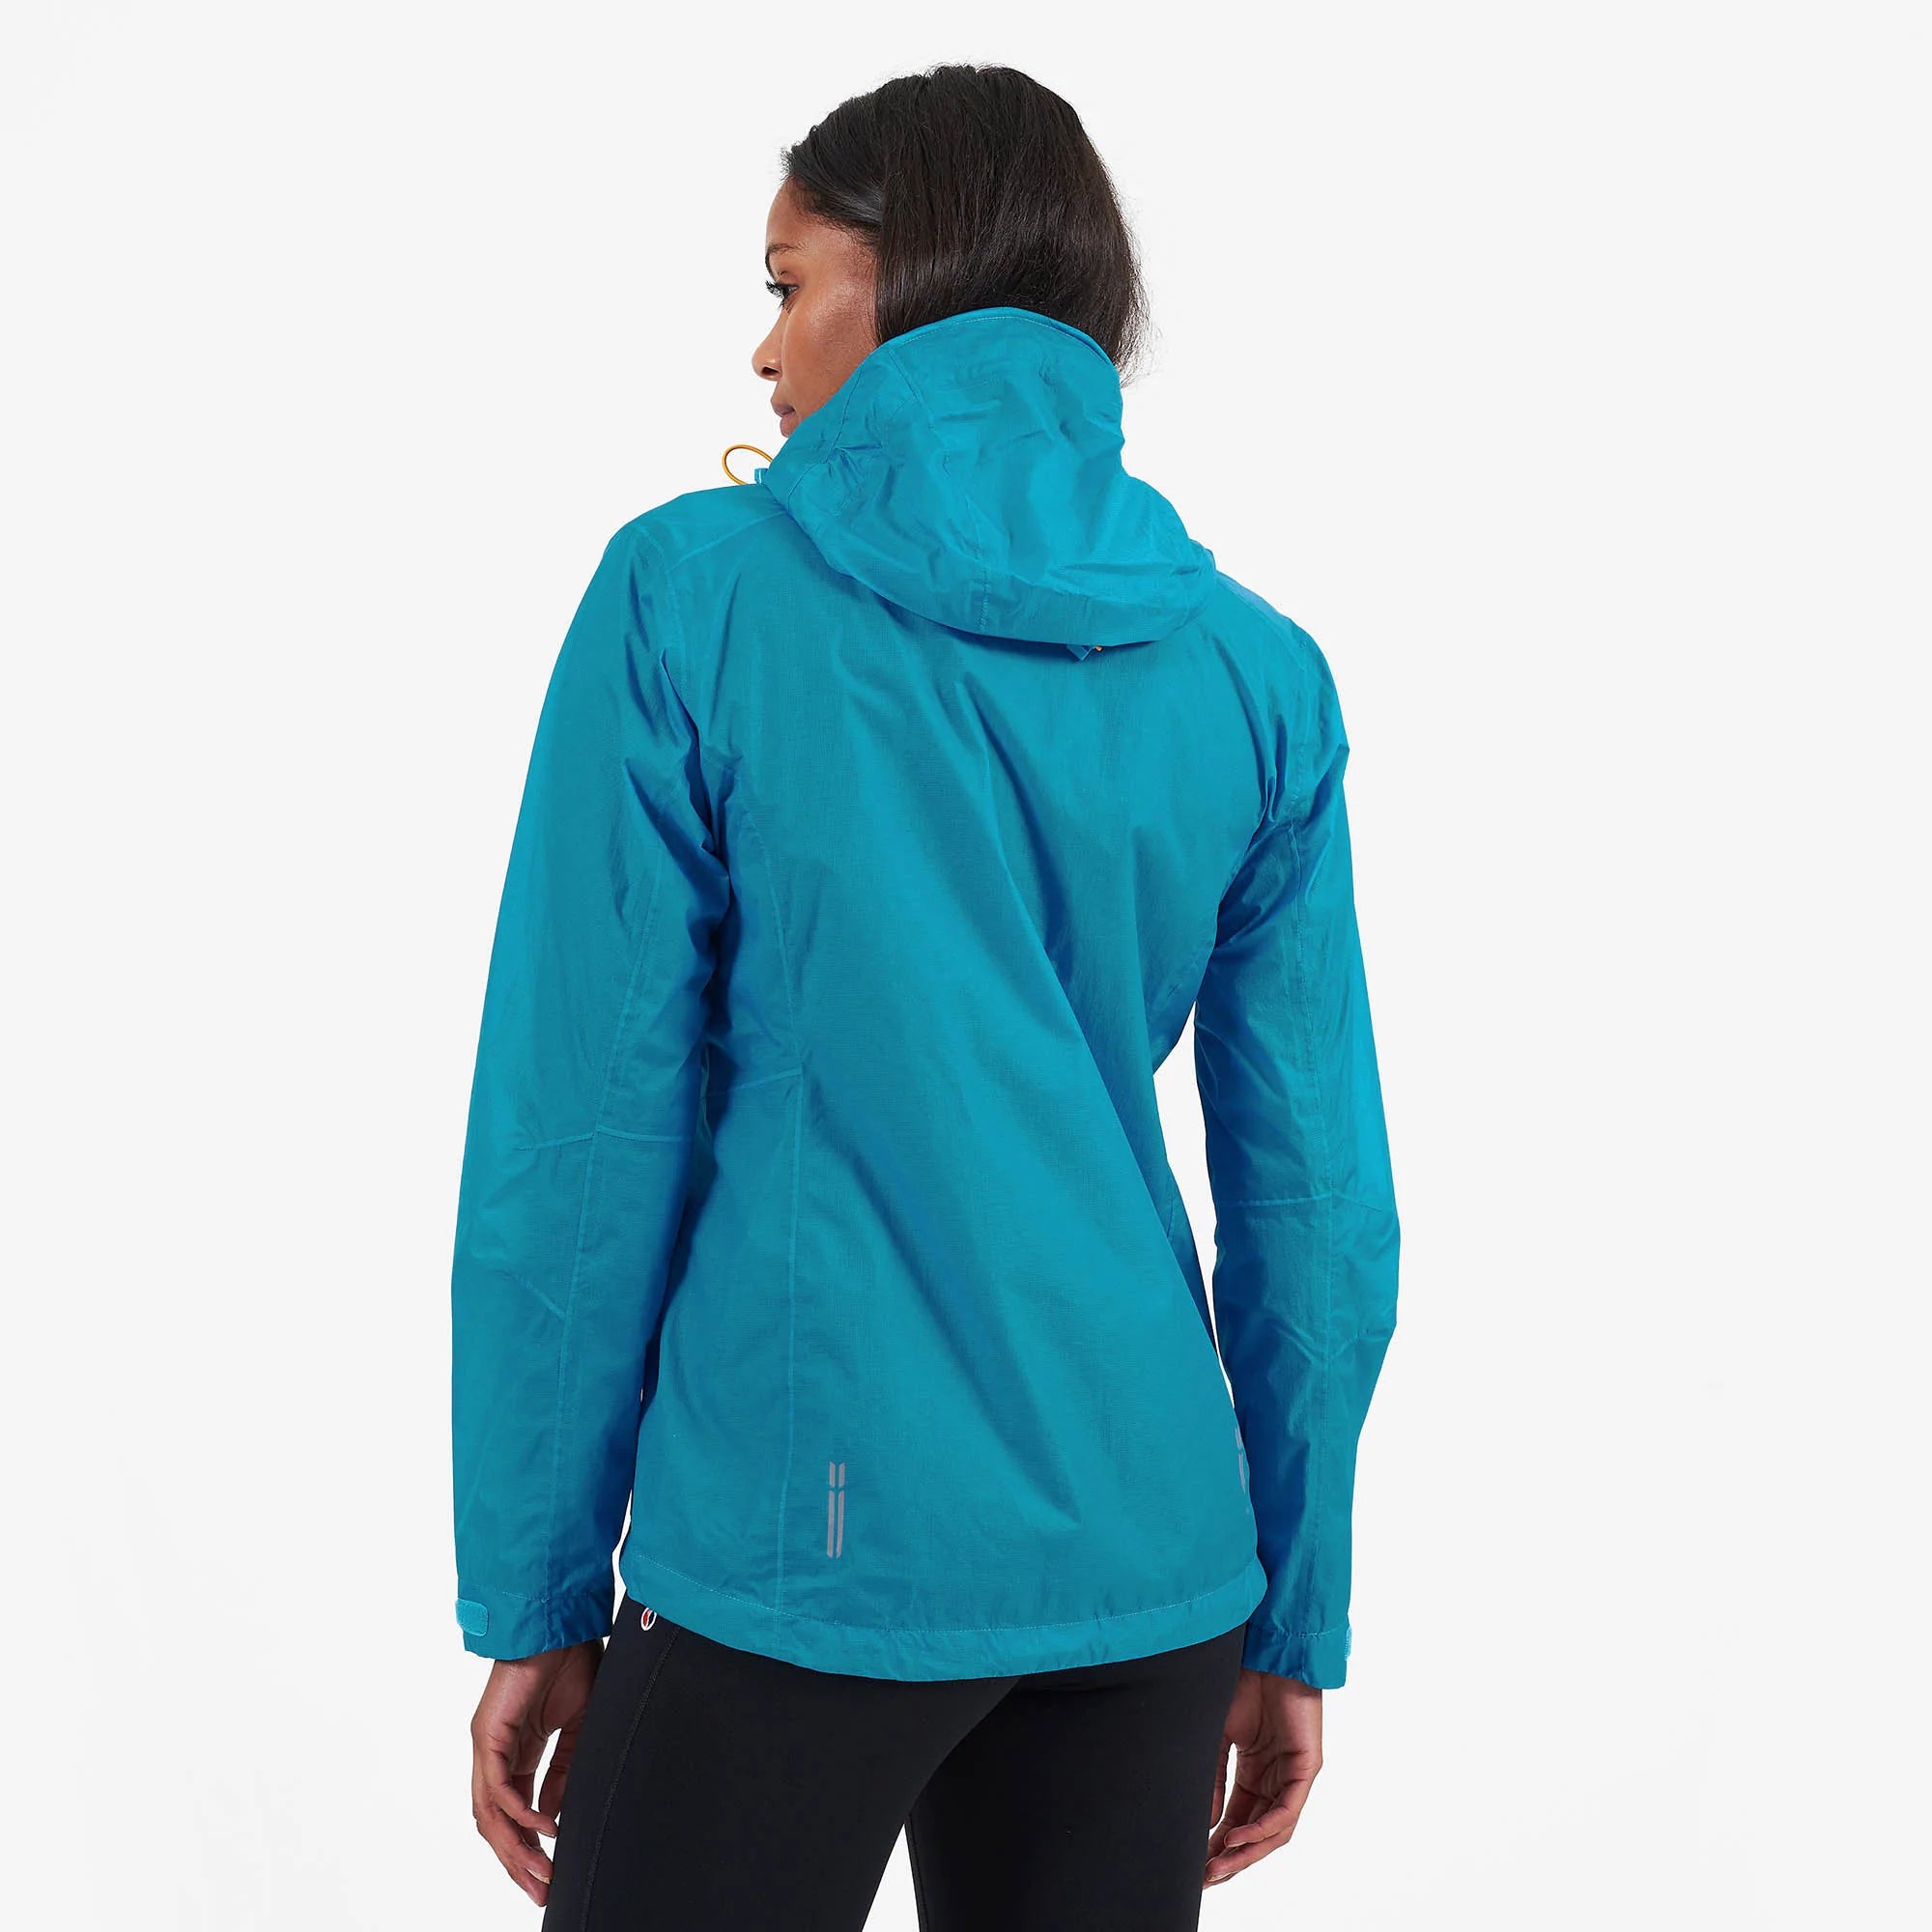 MONTANE Minimus Waterproof Jacket - Women's